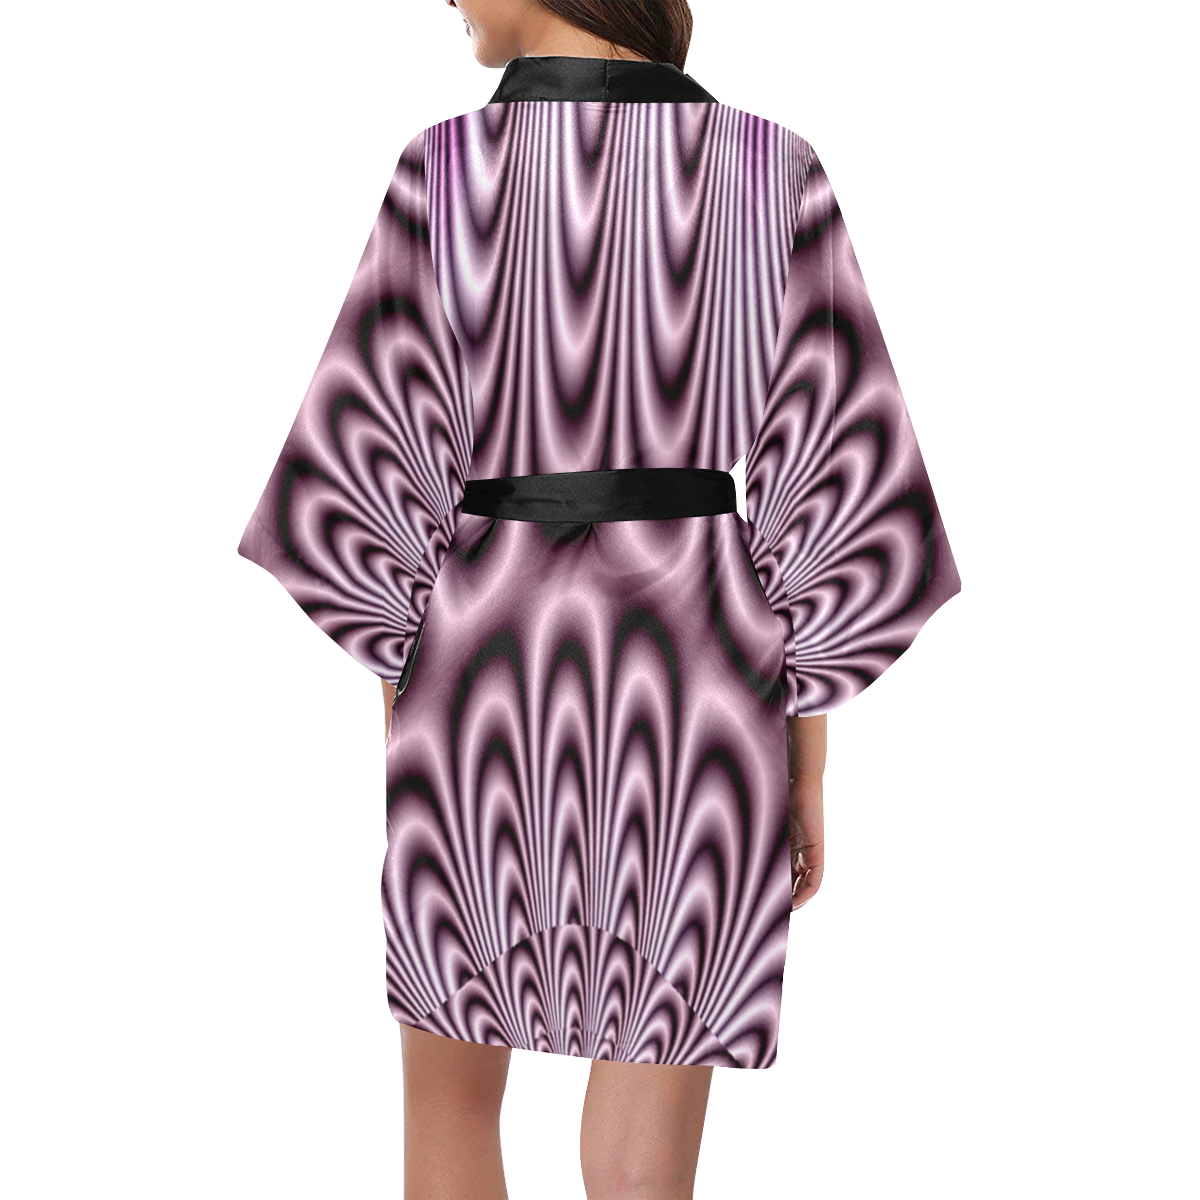 Soft Lilac Fractal Kimono Robe